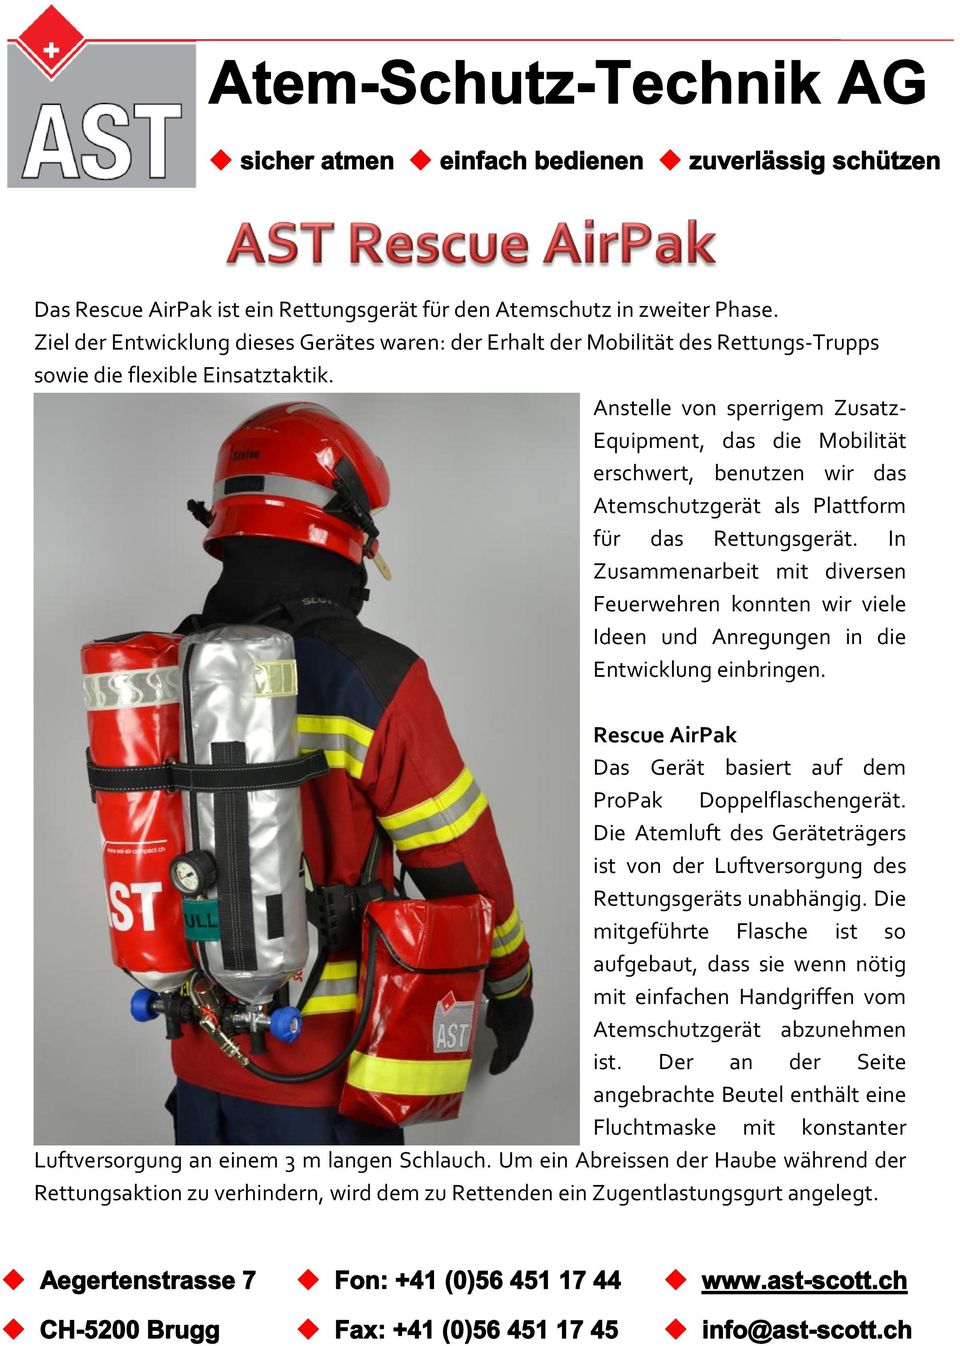 In Zusammenarbeit mit diversen Feuerwehren konnten wir viele Ideen und Anregungen in die Entwicklung einbringen. Rescue AirPak Das Gerät basiert auf dem ProPak Doppelflaschengerät.